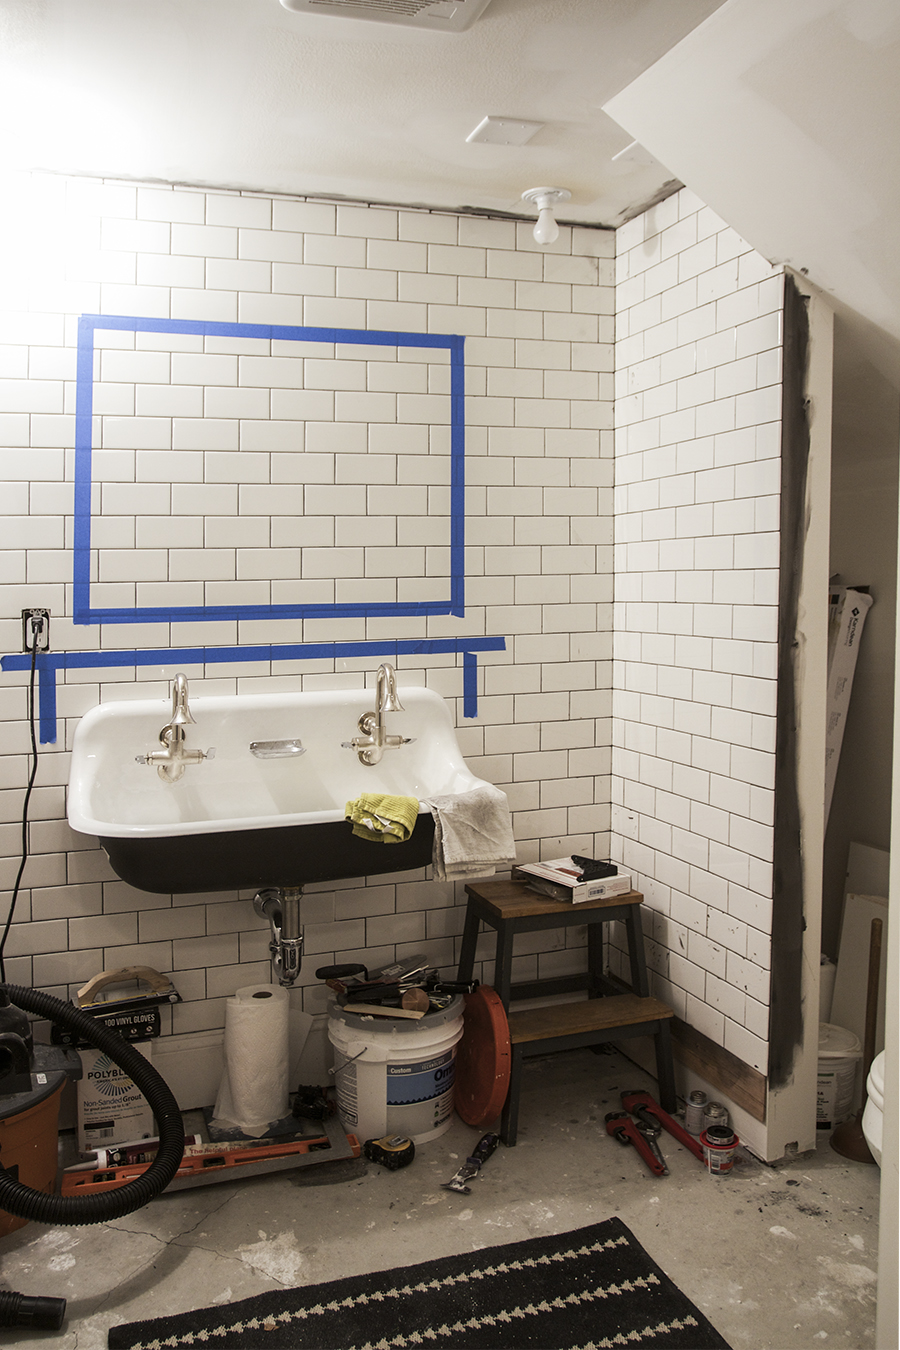 Bathroom Tiling Progress | Deuce Cities Henhouse